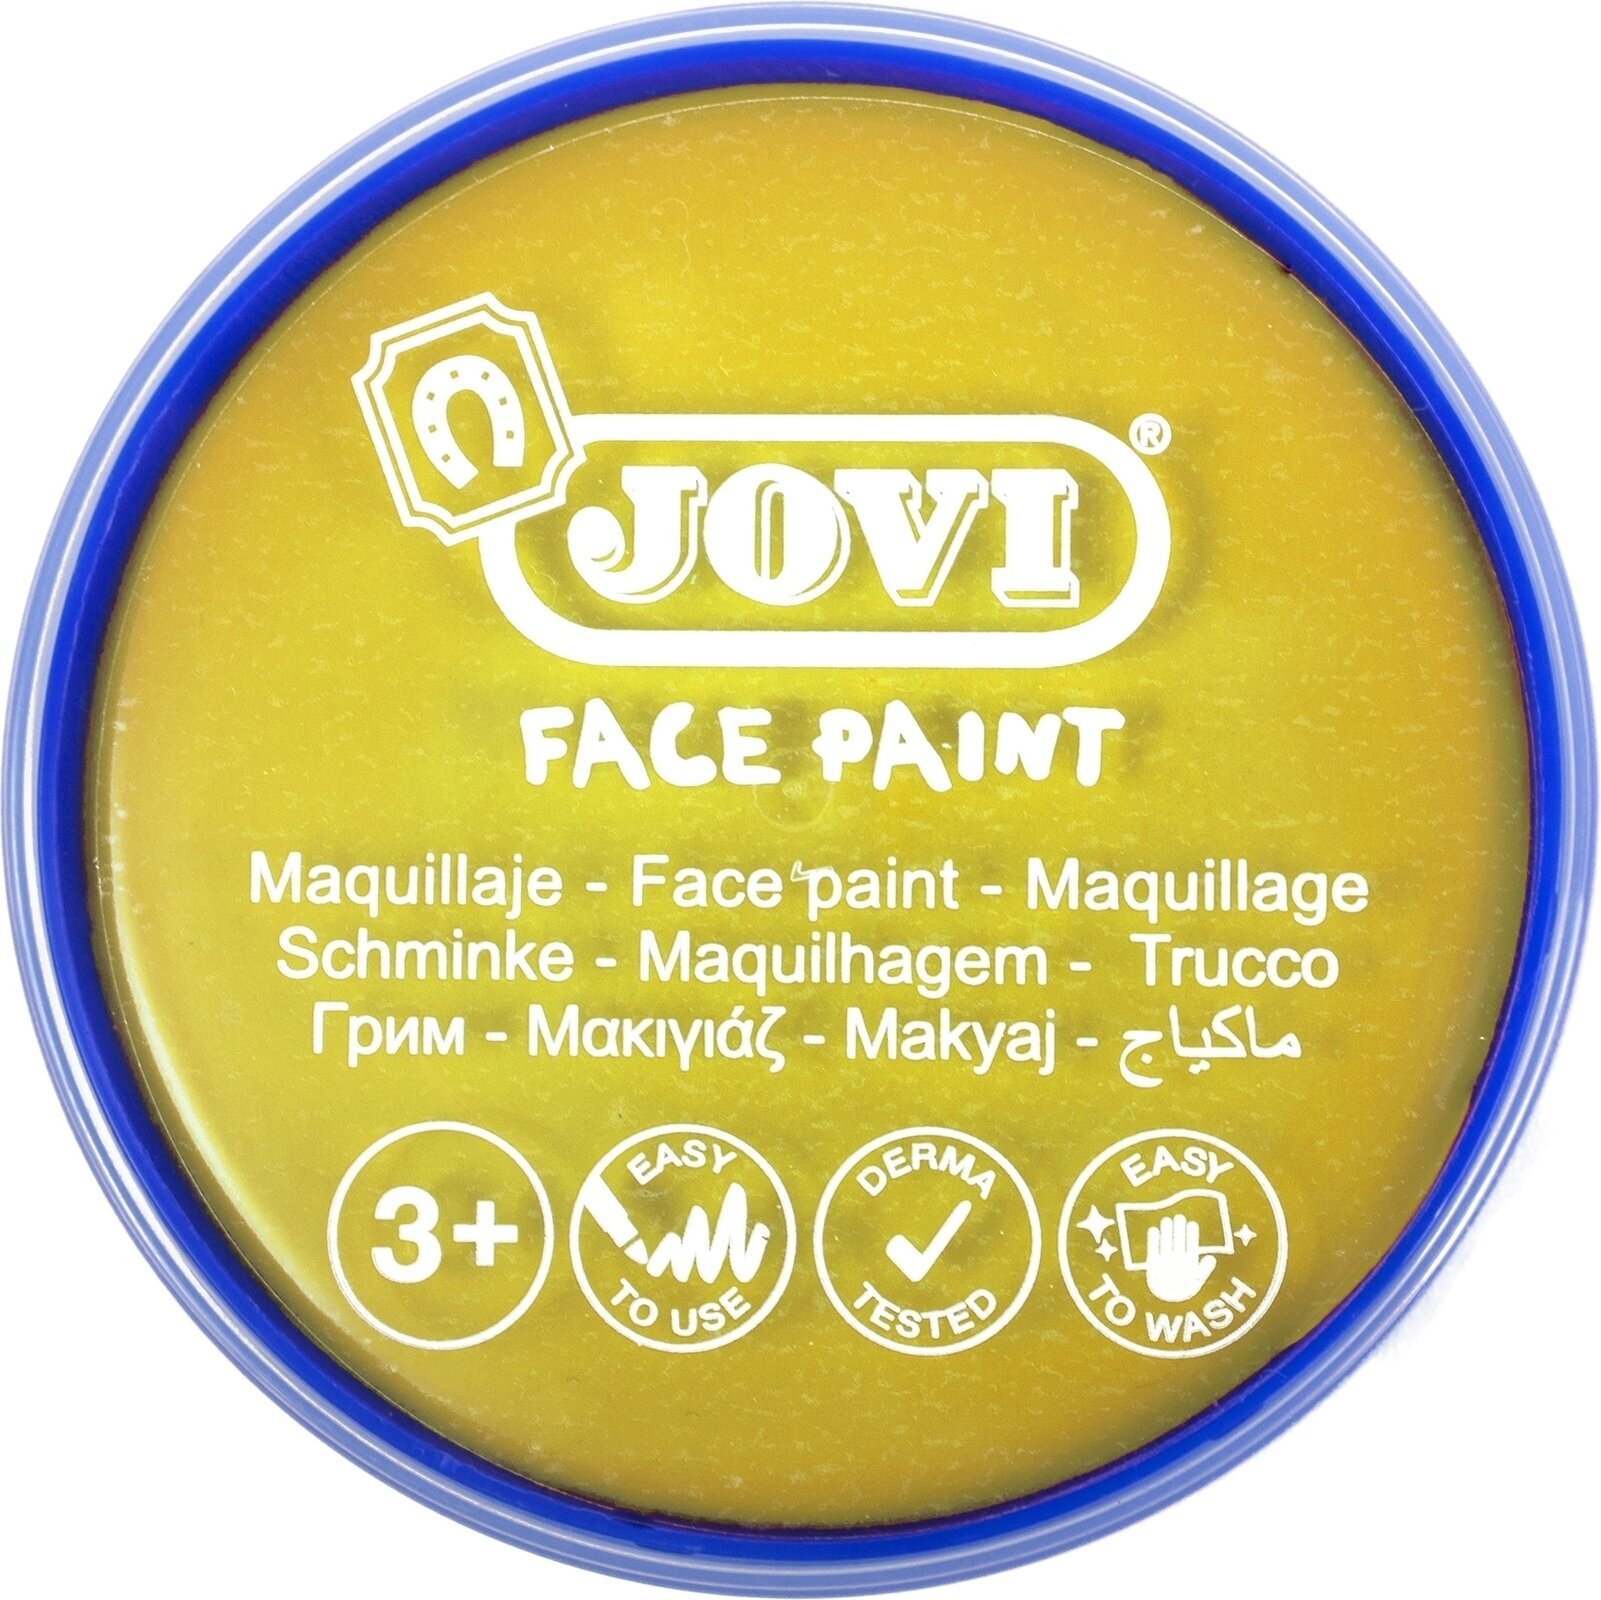 Face Paint Jovi 17102 Face Paint Yellow 8 ml 1 pc